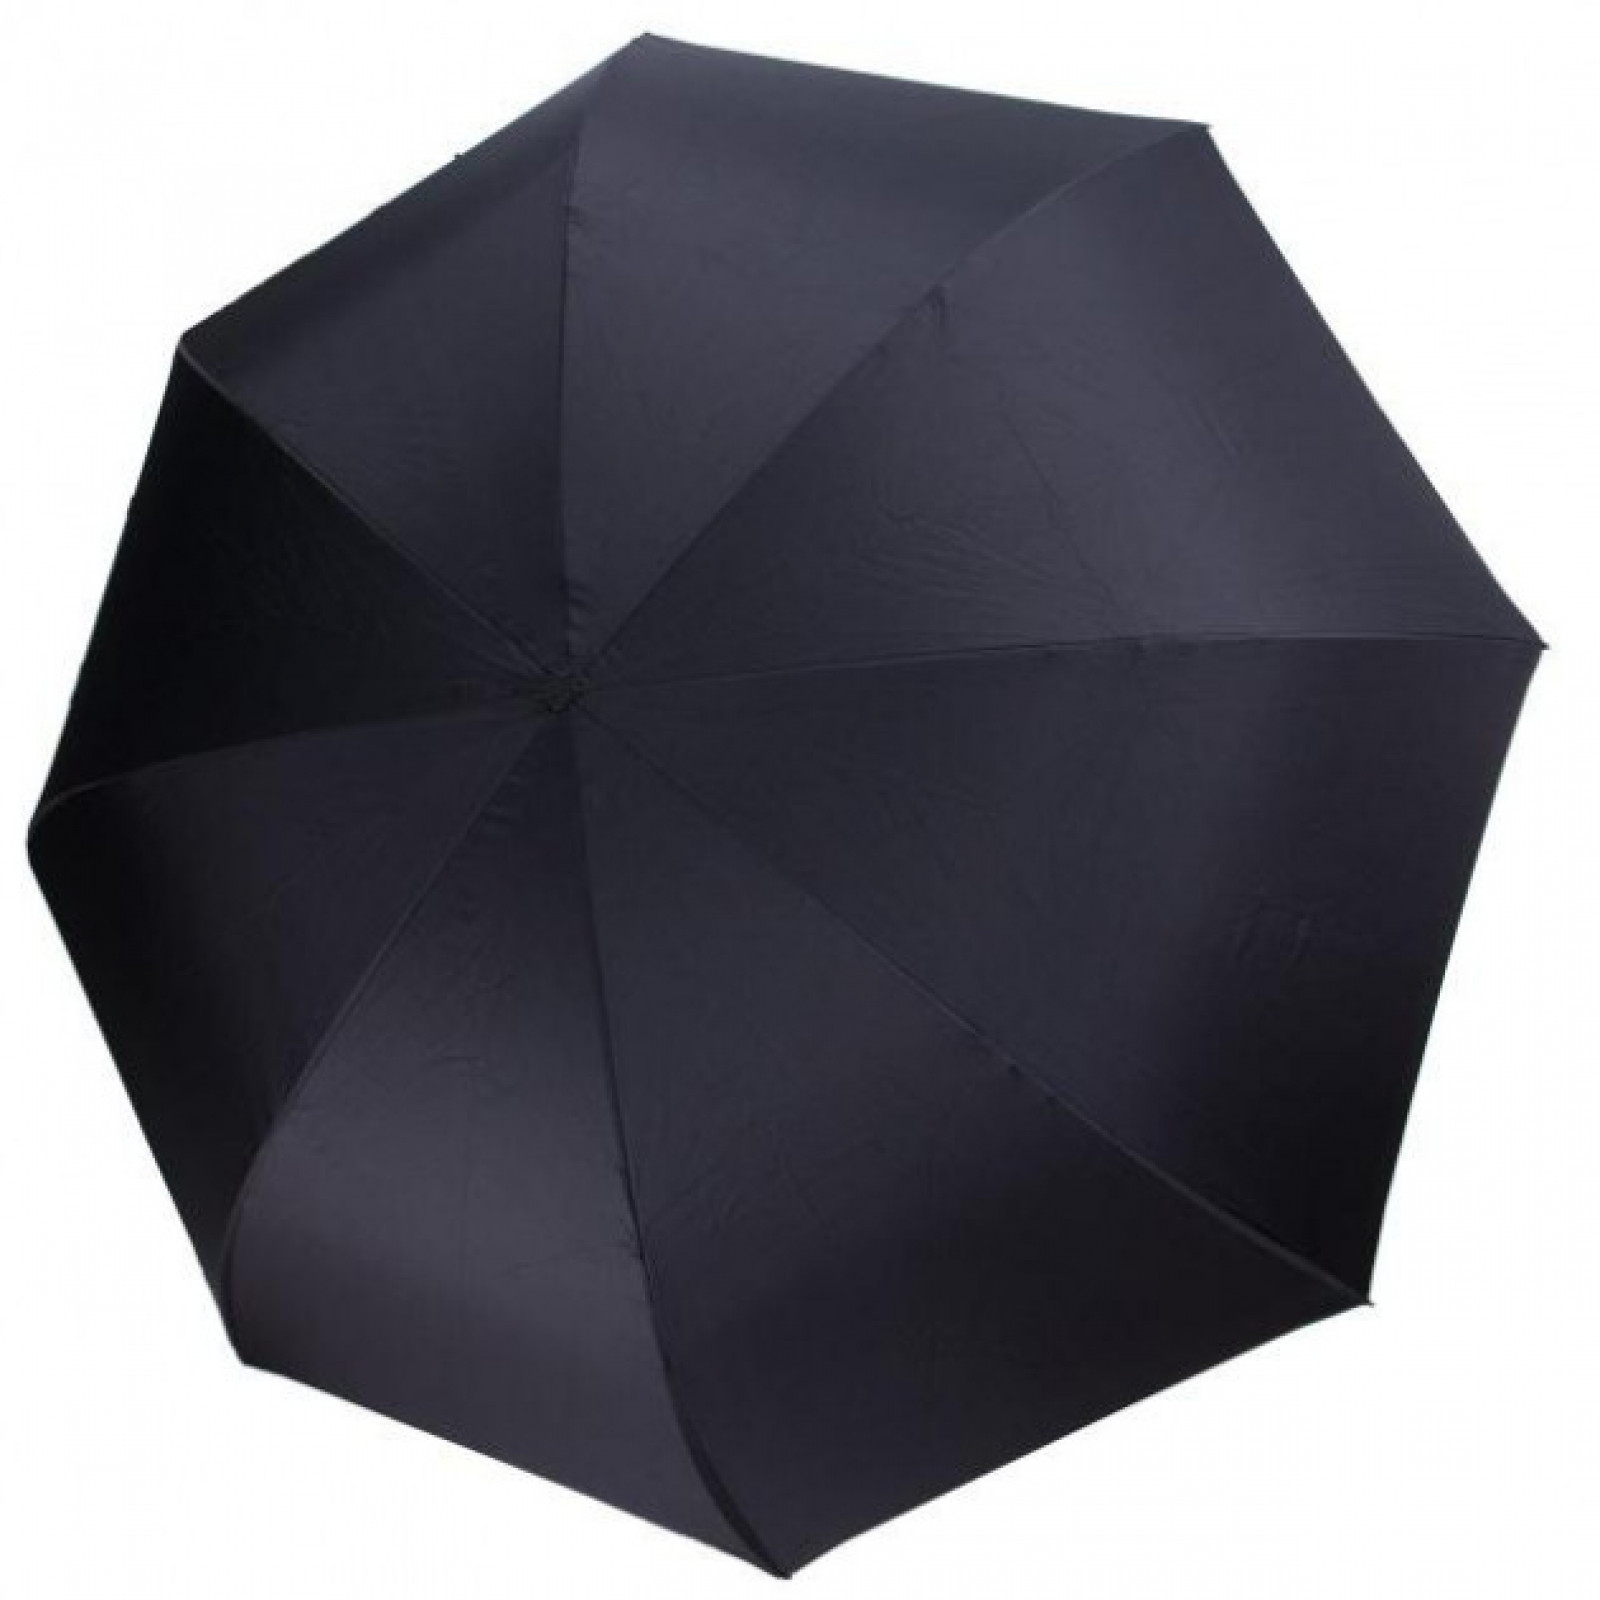 Зонт обратного сложения, антизонт, умный зонт, зонт наоборот Up Brella Бордовый 151023